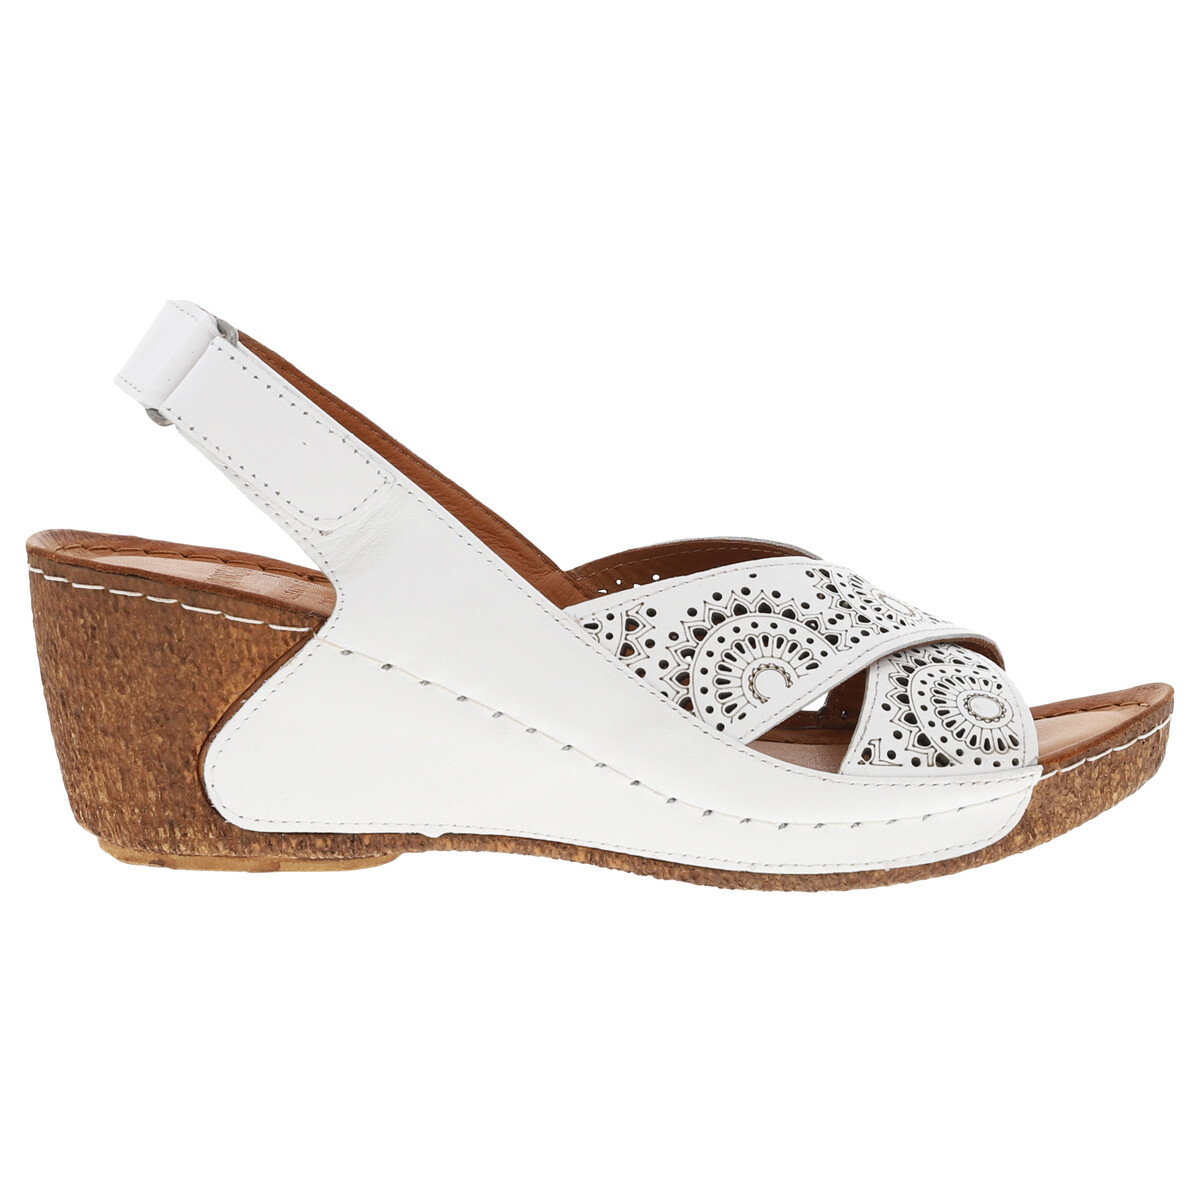 Chaussures Femme Sandales et Nu-pieds Karyoka Nu-pieds cuir talon compensé haut Blanc